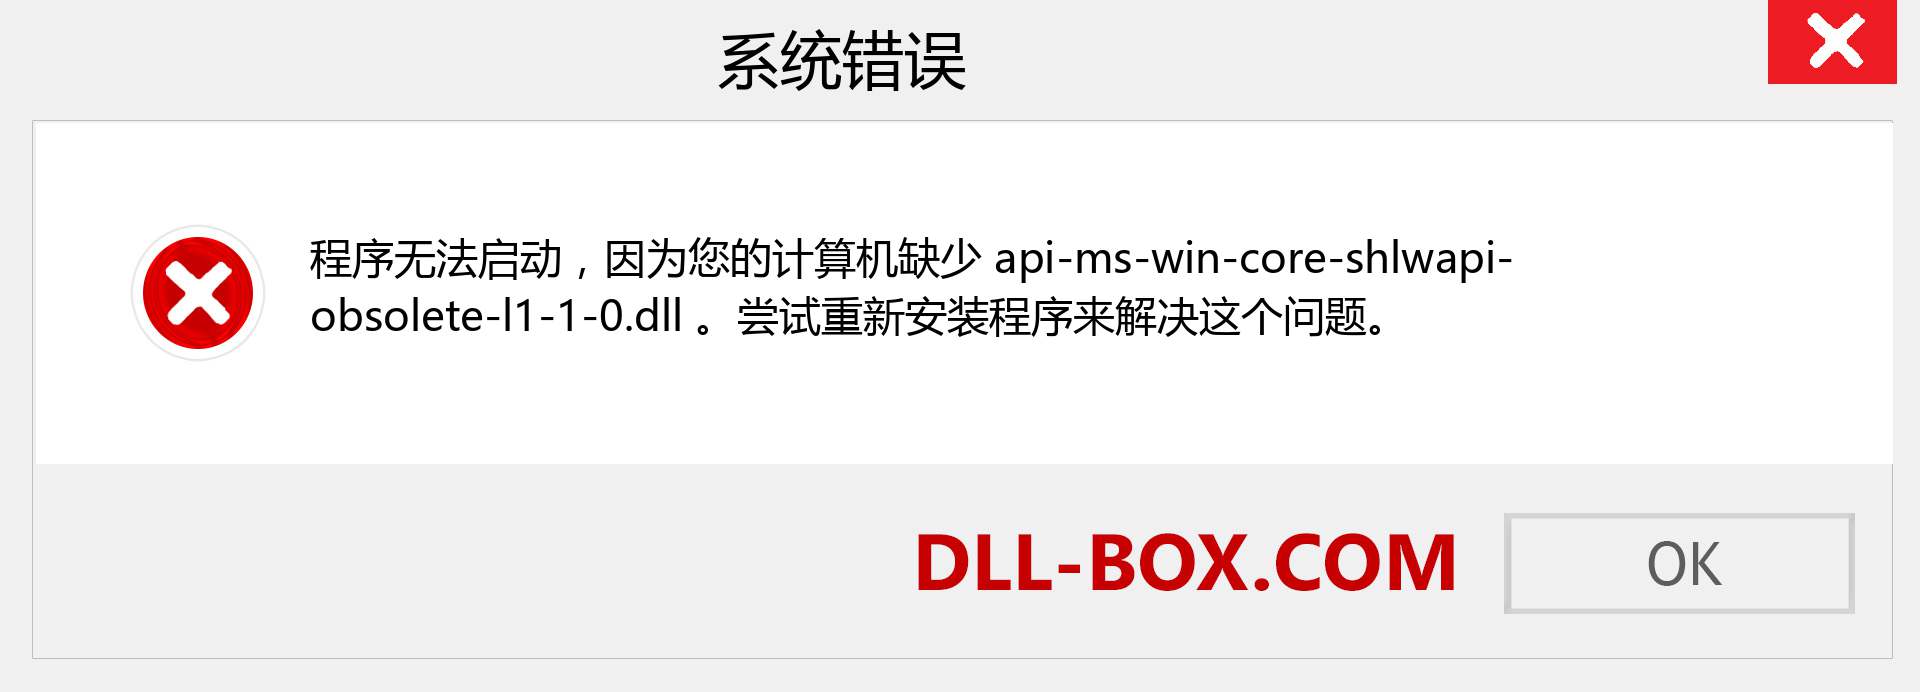 api-ms-win-core-shlwapi-obsolete-l1-1-0.dll 文件丢失？。 适用于 Windows 7、8、10 的下载 - 修复 Windows、照片、图像上的 api-ms-win-core-shlwapi-obsolete-l1-1-0 dll 丢失错误